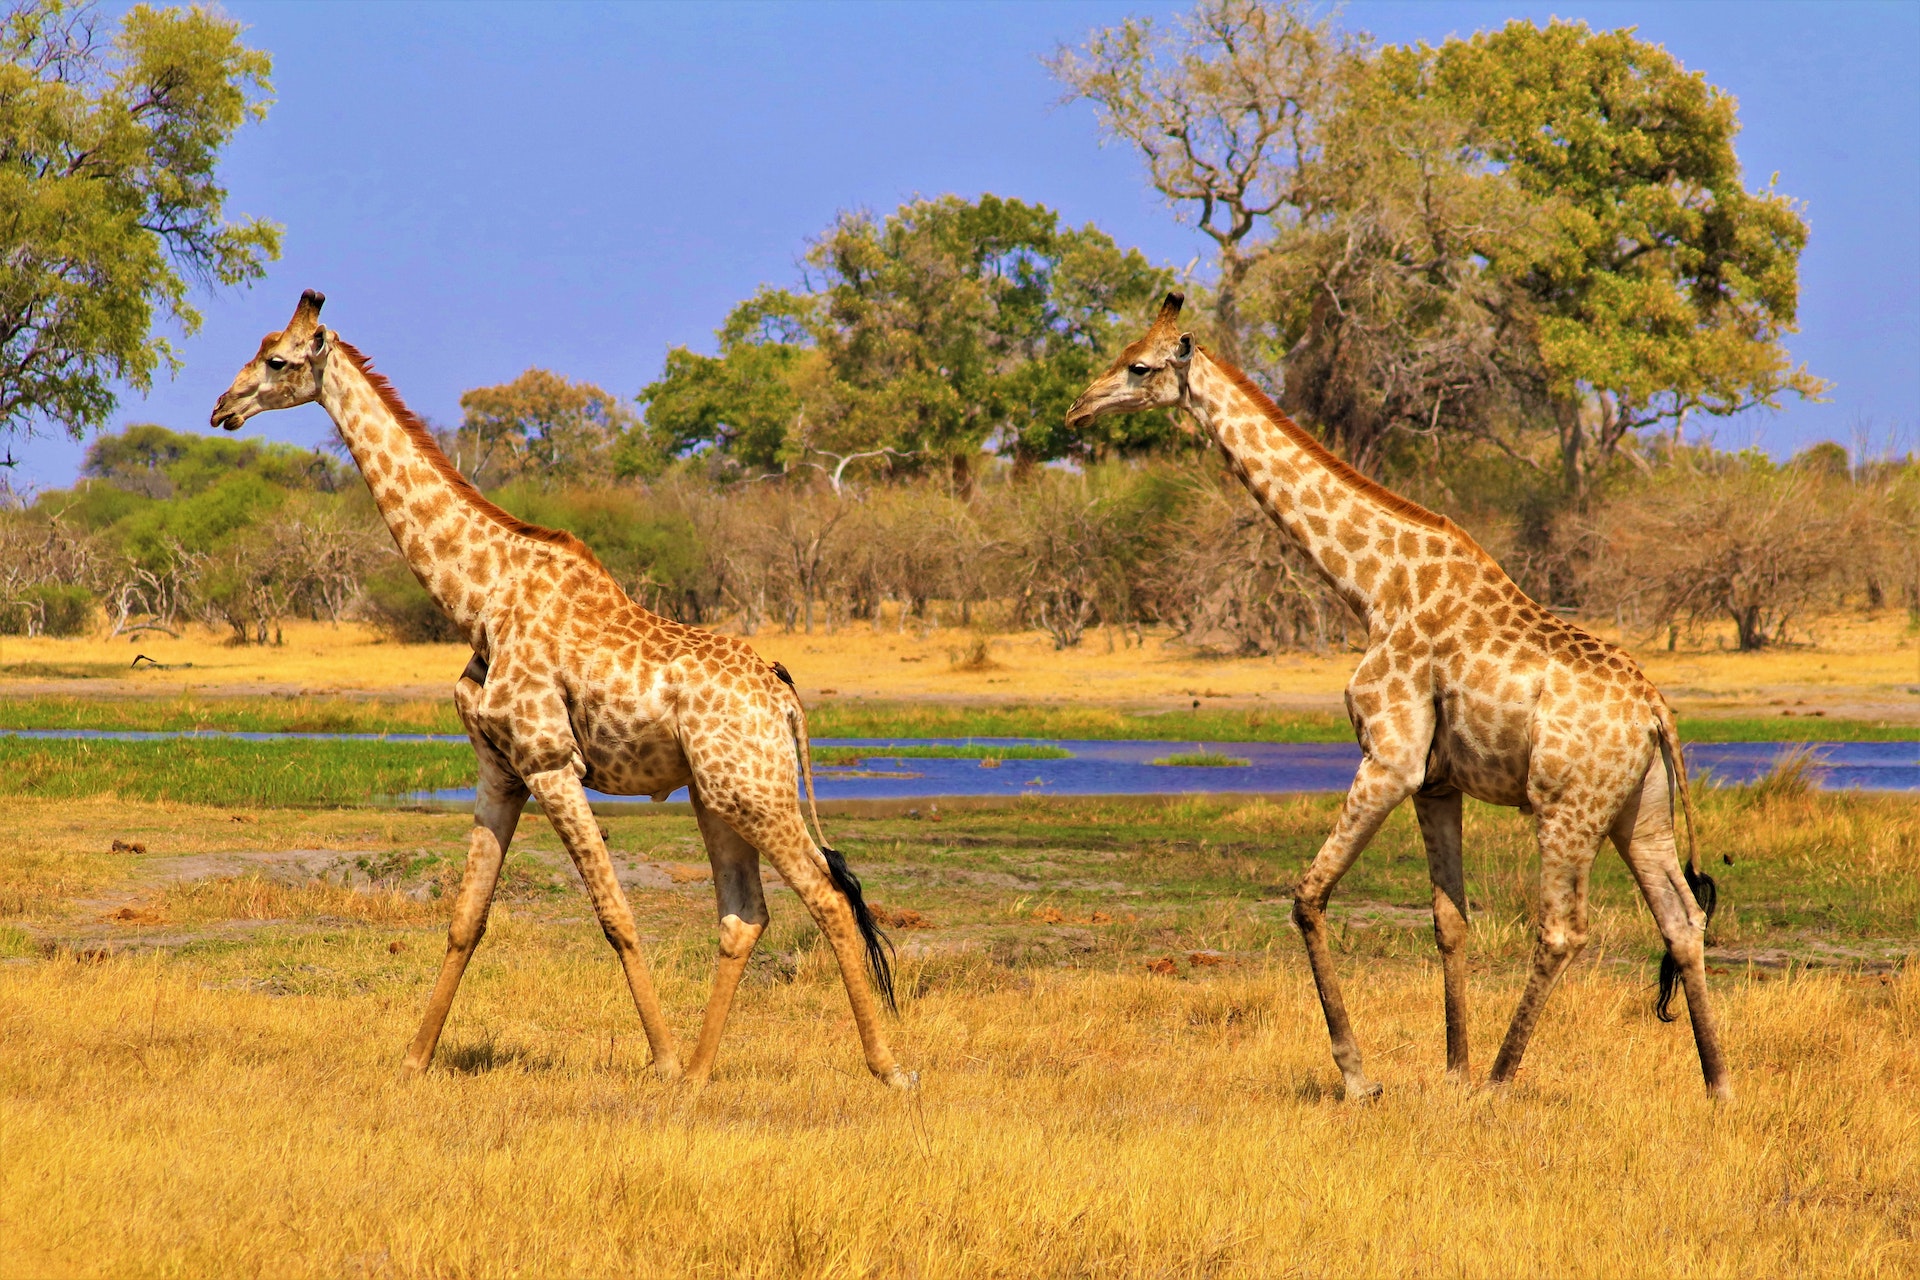 Botswana African Safari, a Couple of Giraffes Credit: Pexels